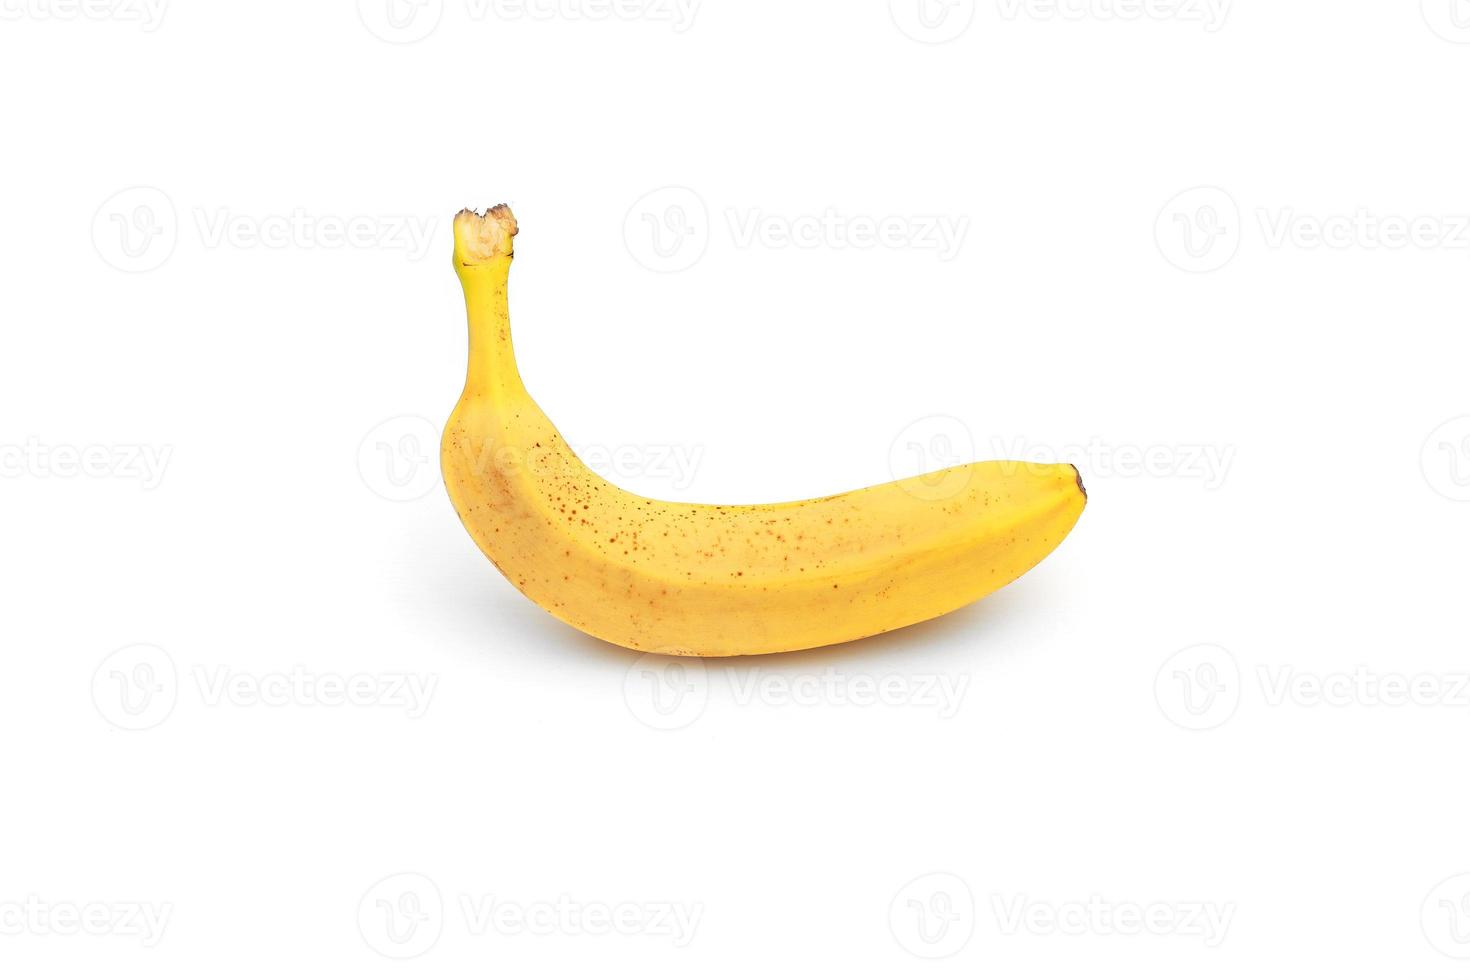 Single yellow ripe banana isolated on white background. Fiber fruits photo